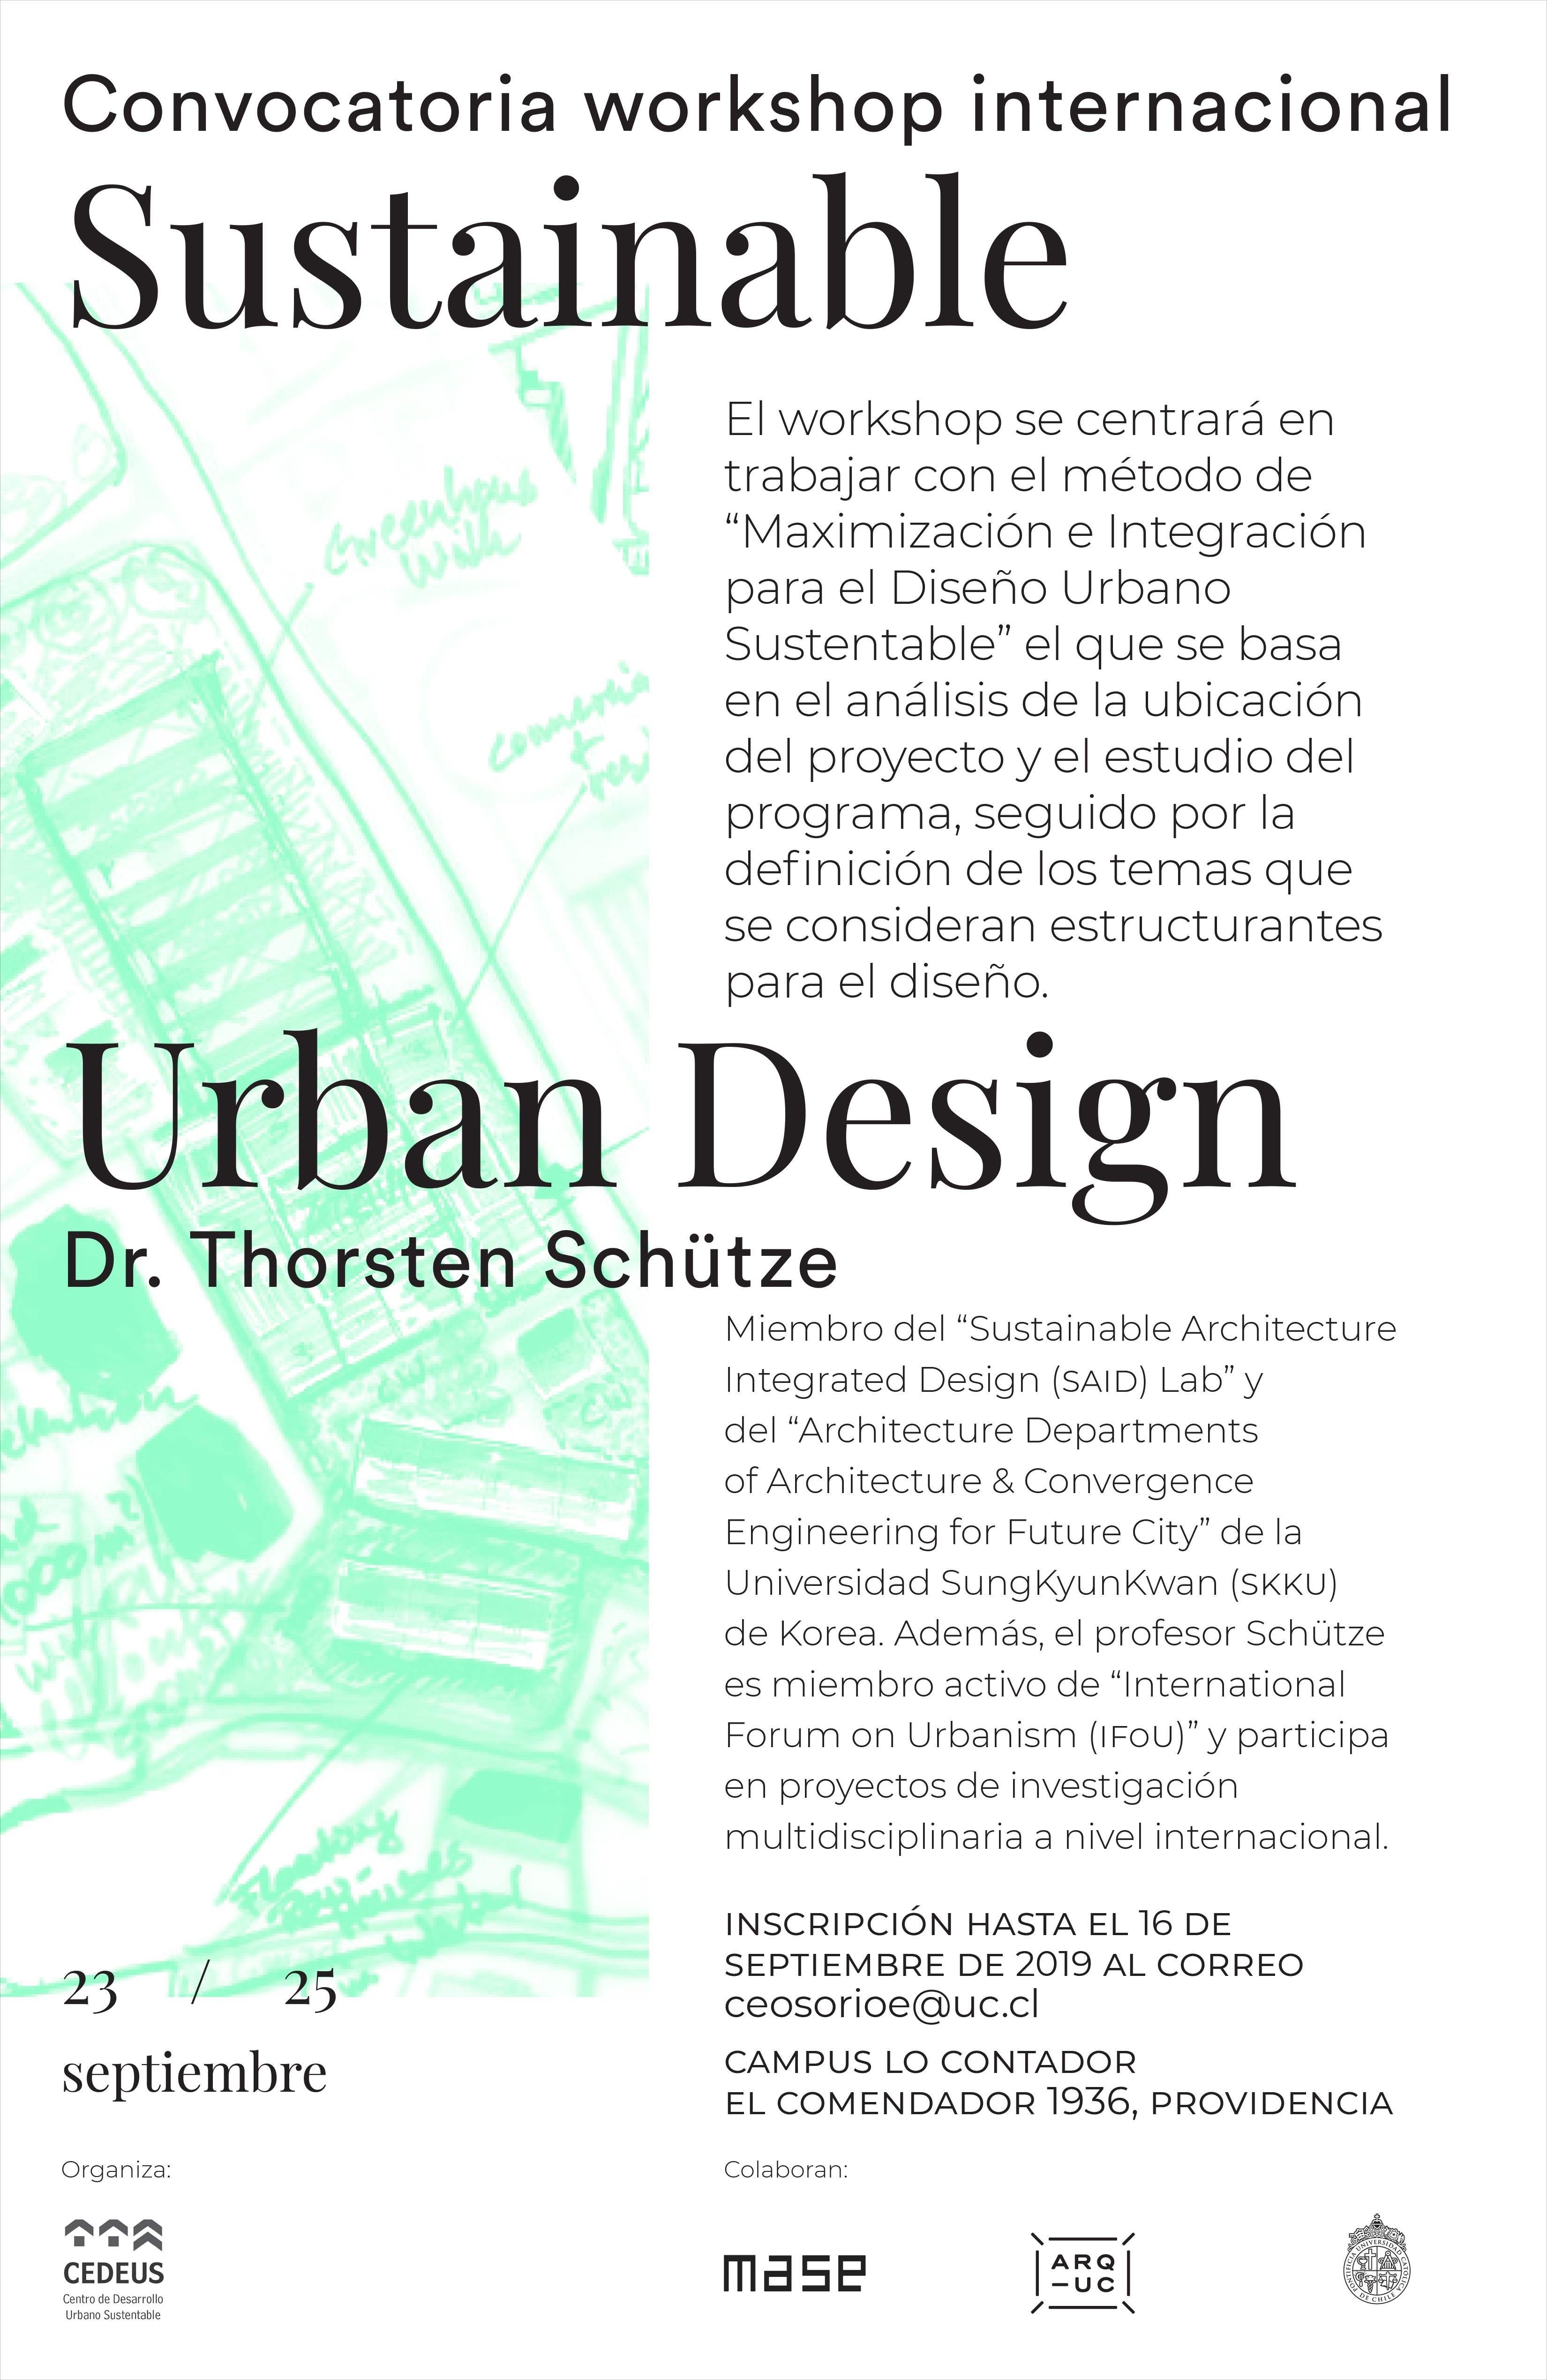 20190823_MASE_Conv_Workshop_Sust_Urban_Design_3_copy.jpg